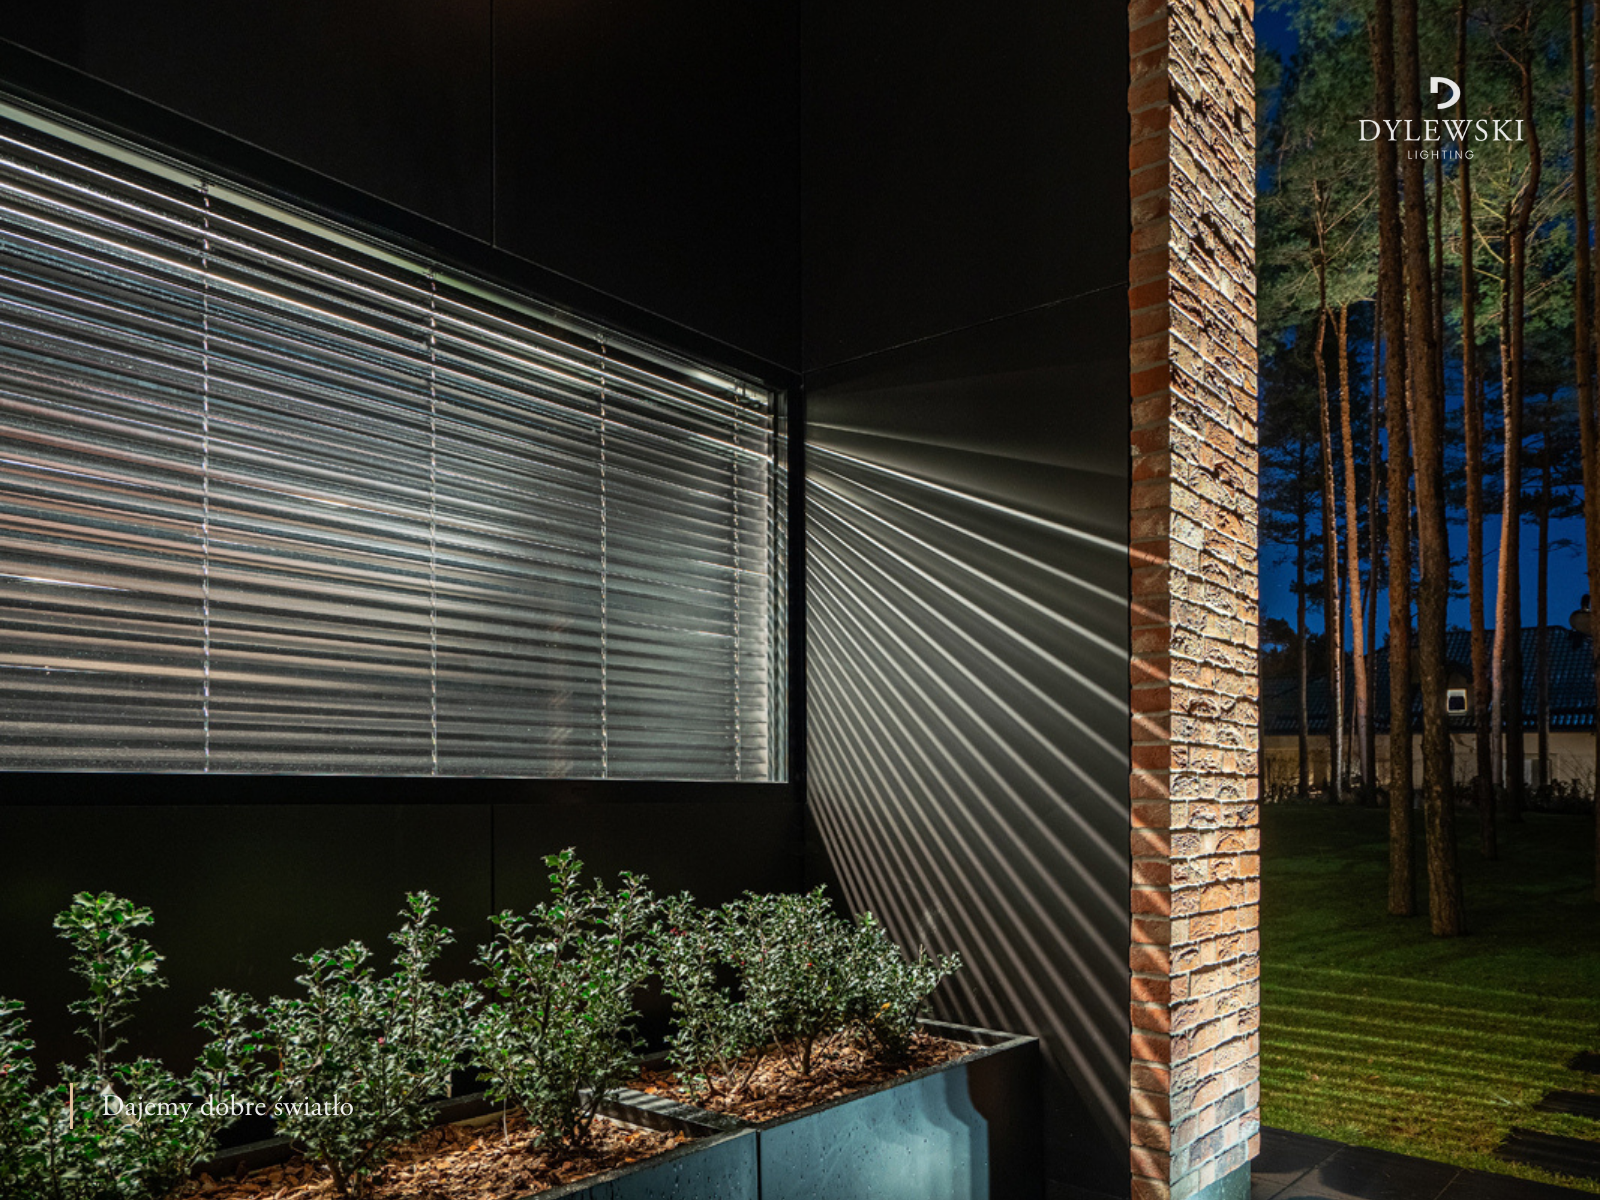 Eleganckie klasyczne oświetlenie ogrodu domu pod Warszawą zaprojektowane przez DYLEWSKI Lighting